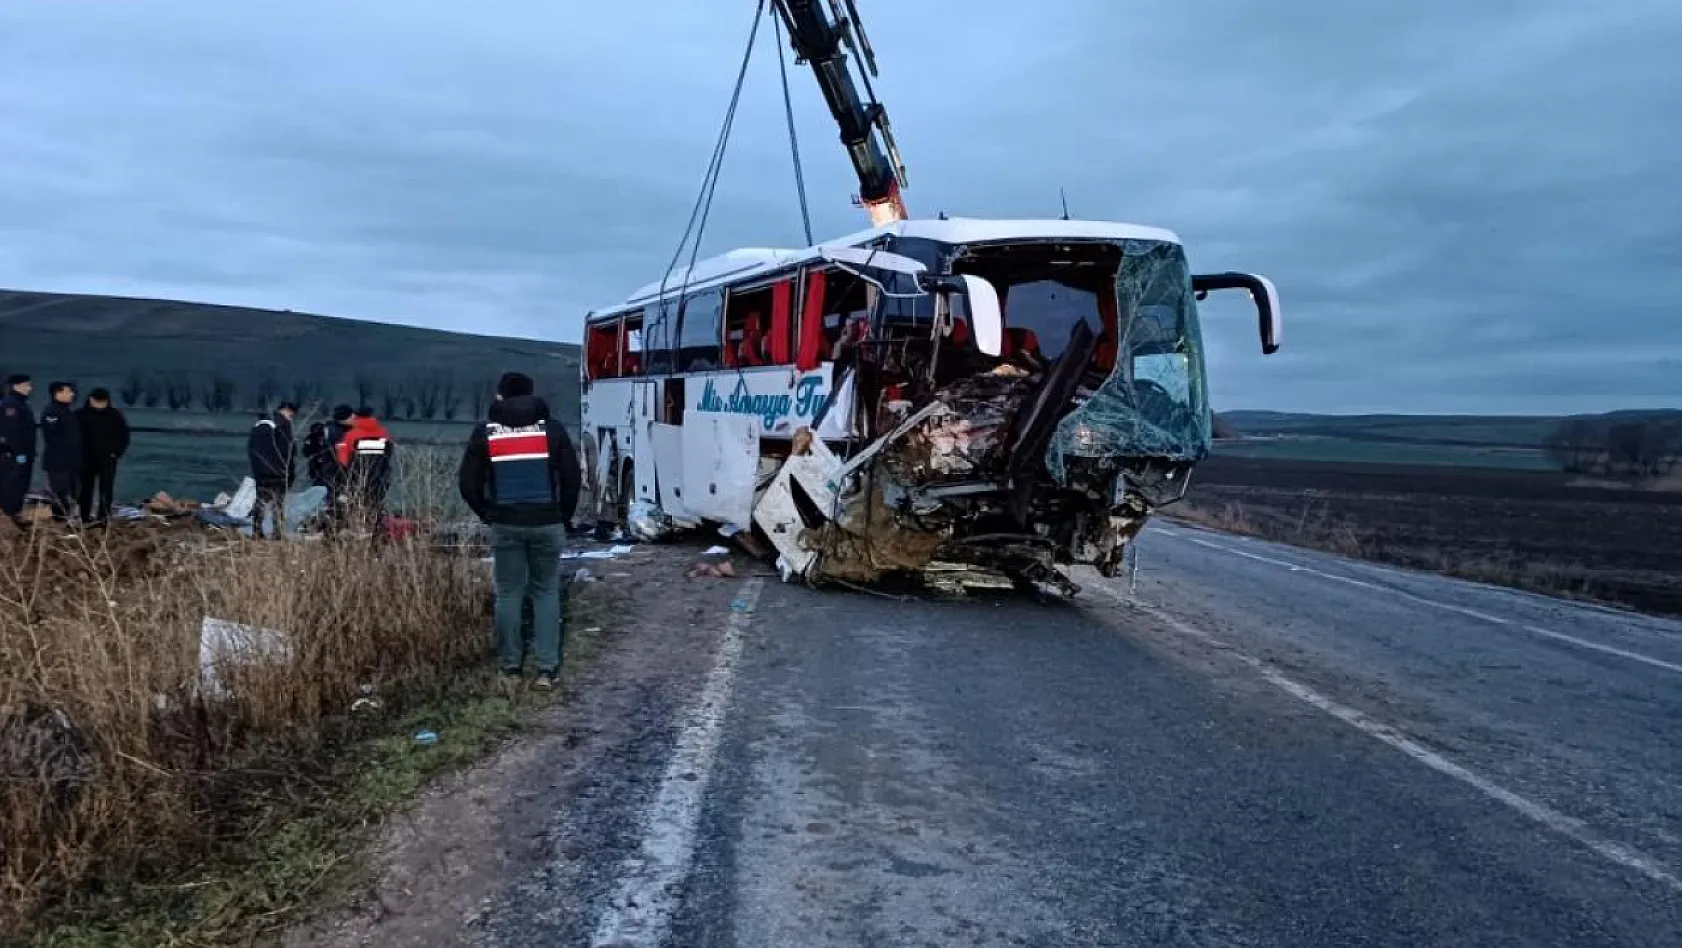 Acı haberi başkan paylaştı: Kayserili Melda otobüs kazasında hayatını kaybetti